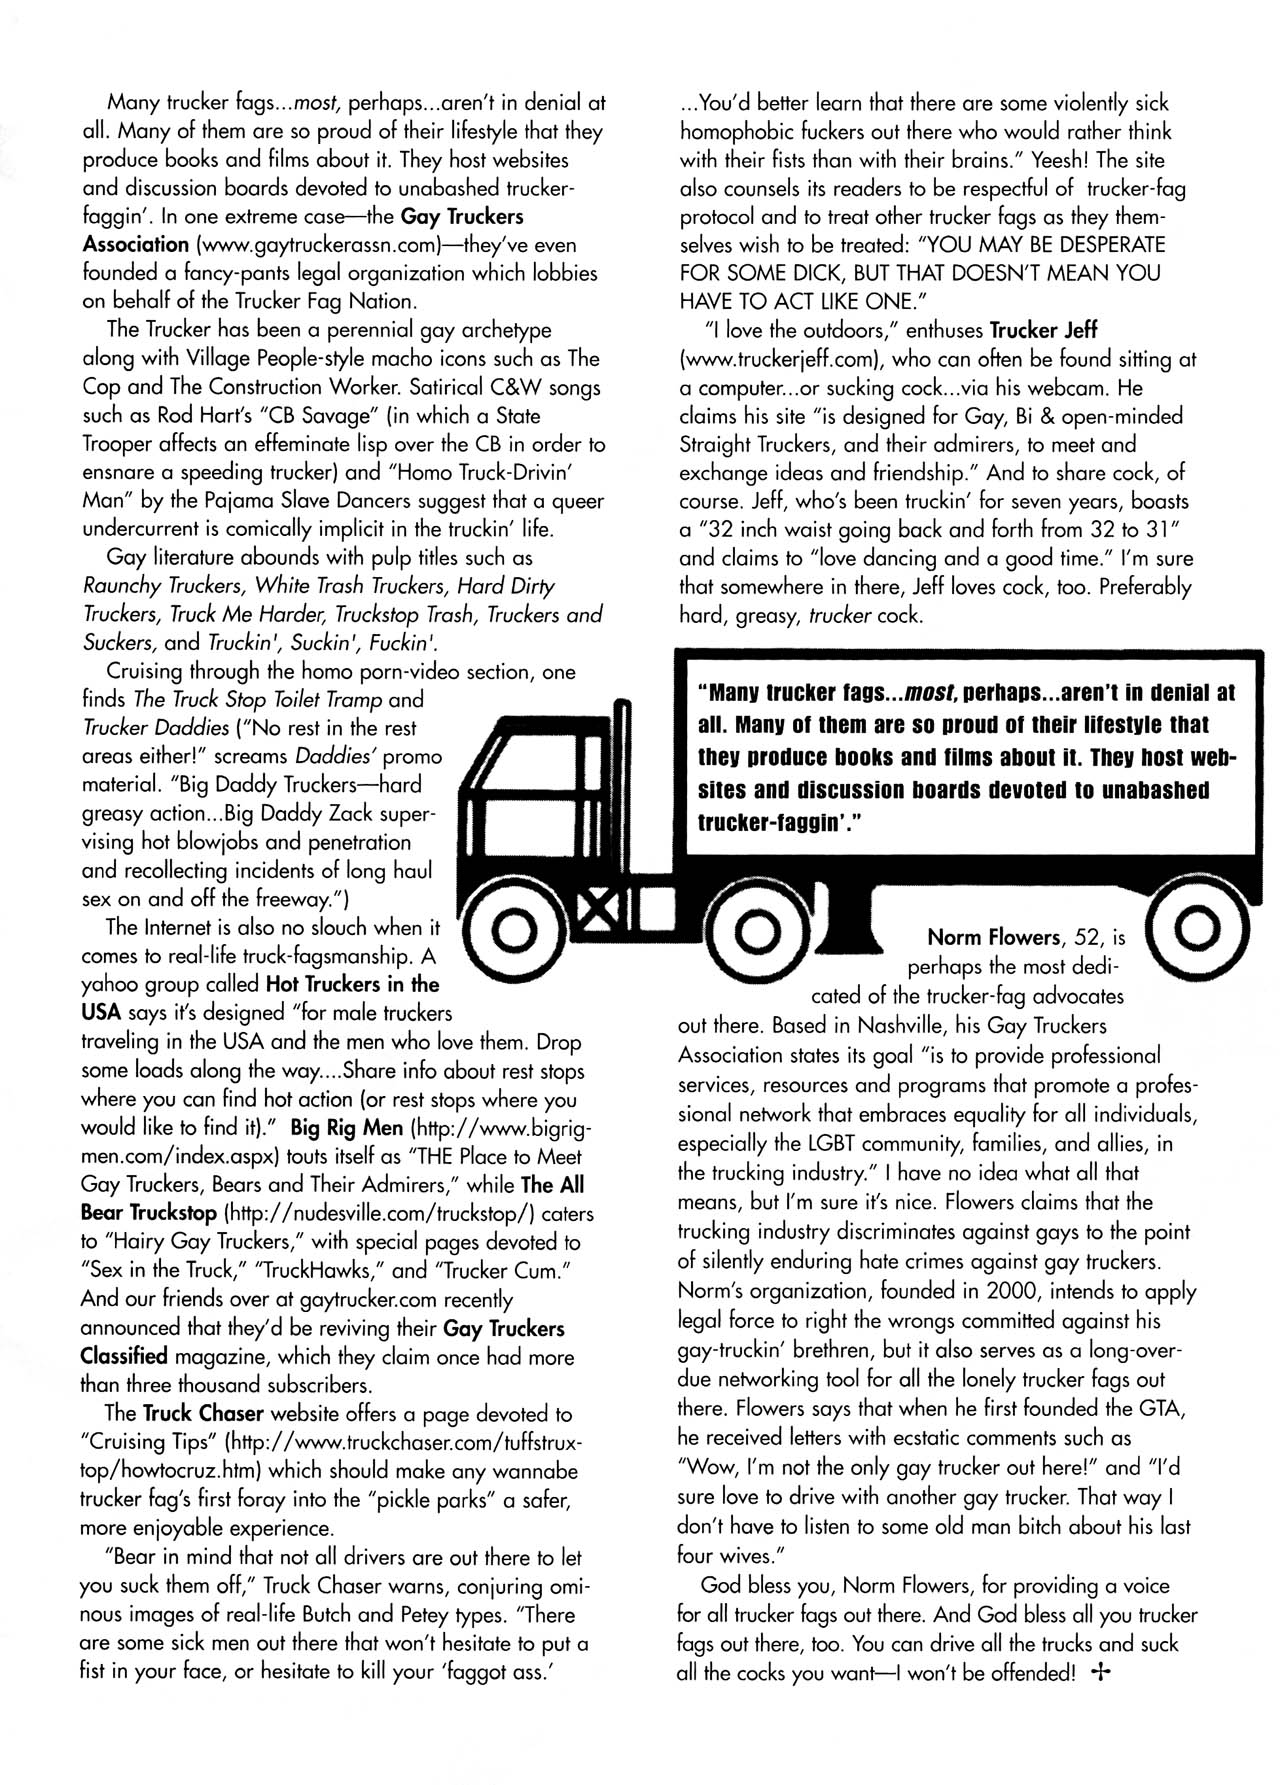 [Jim Blanchard] Trucker Fags in Denial 31